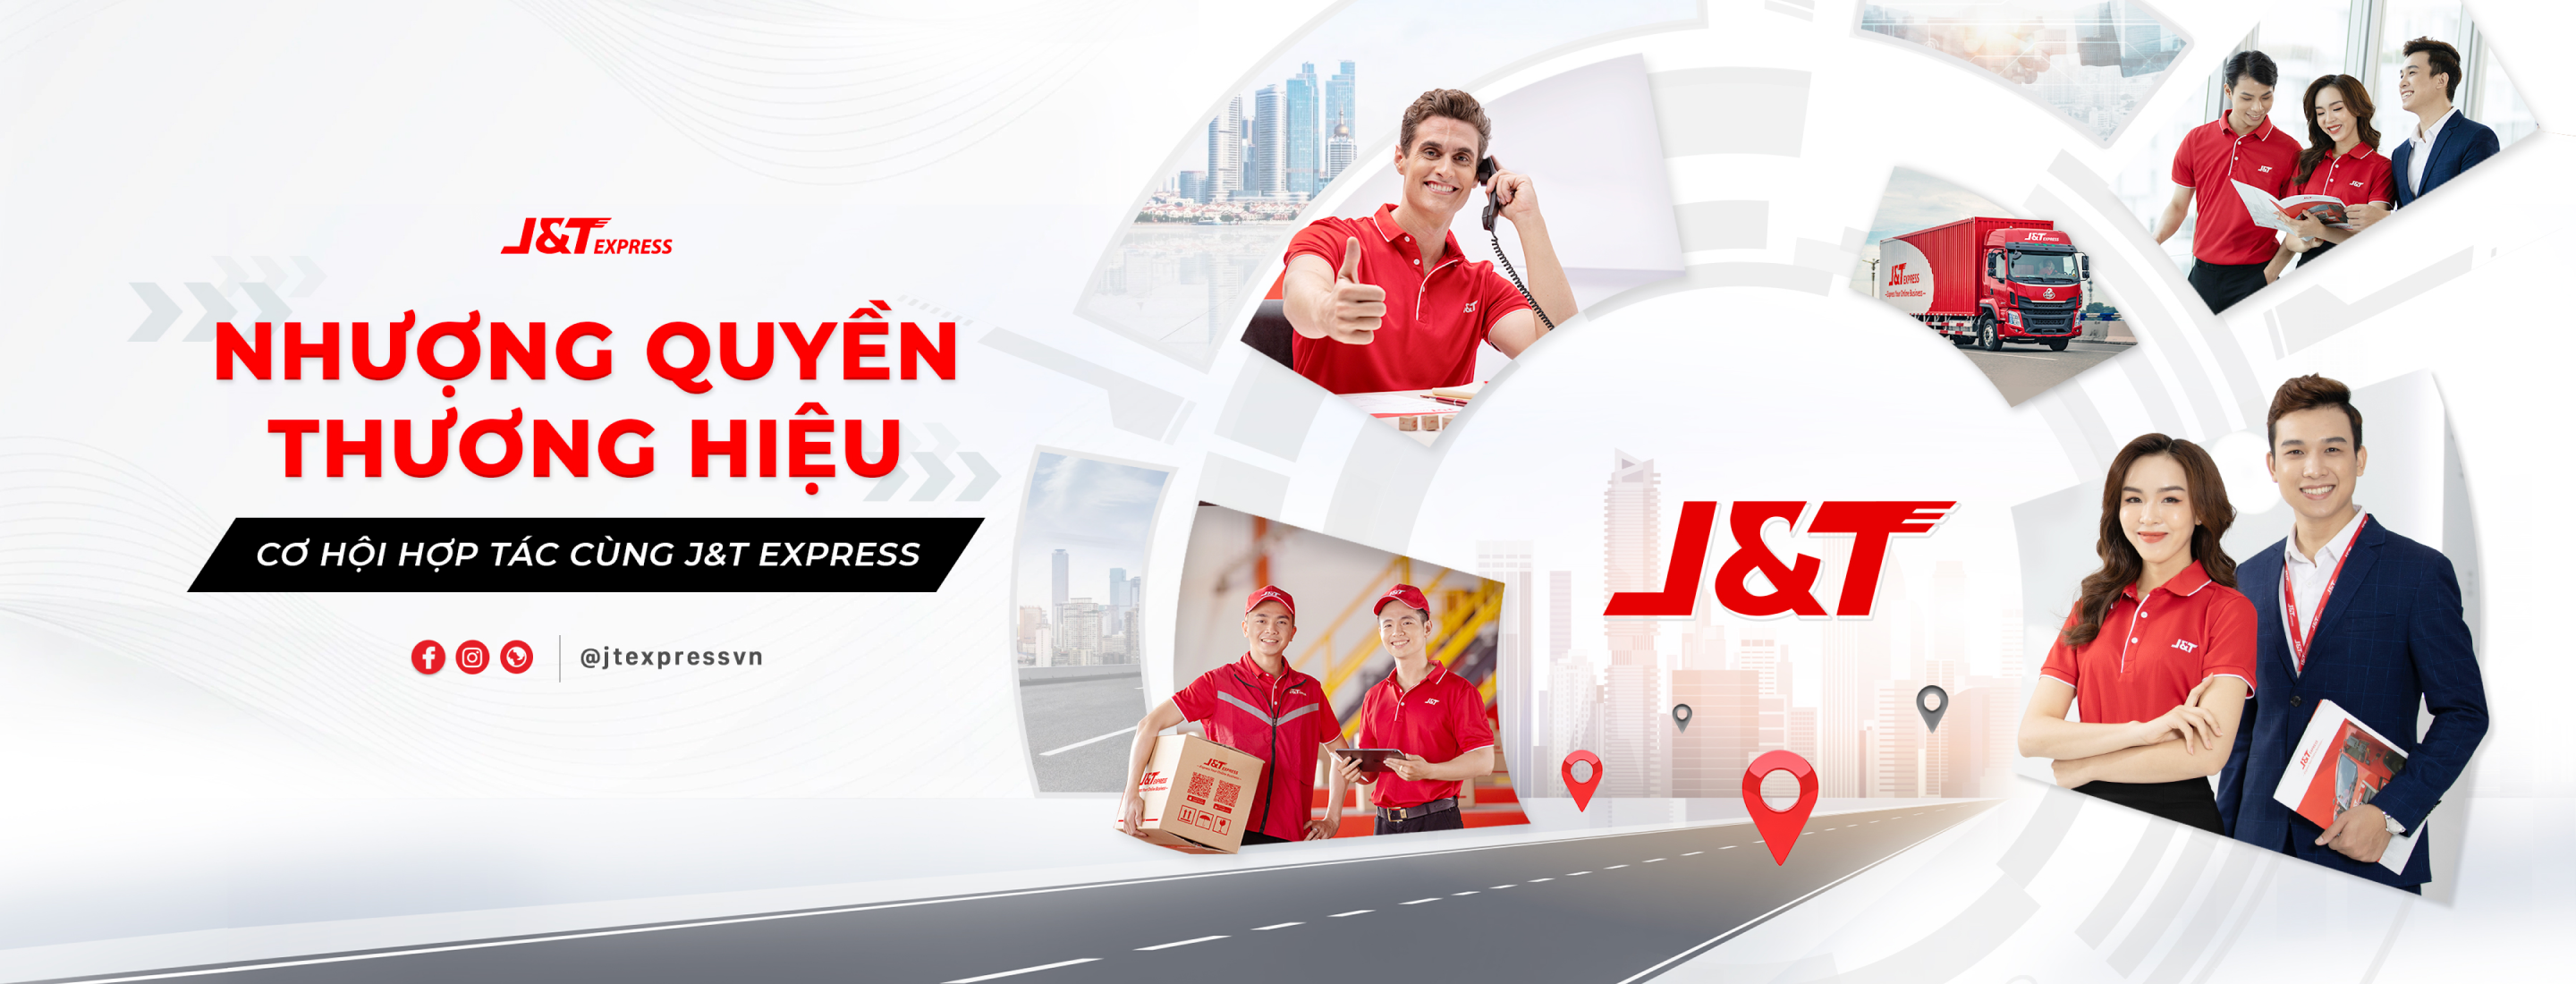 J&T Express Việt Nam - Thắc mắc về nhượng quyền